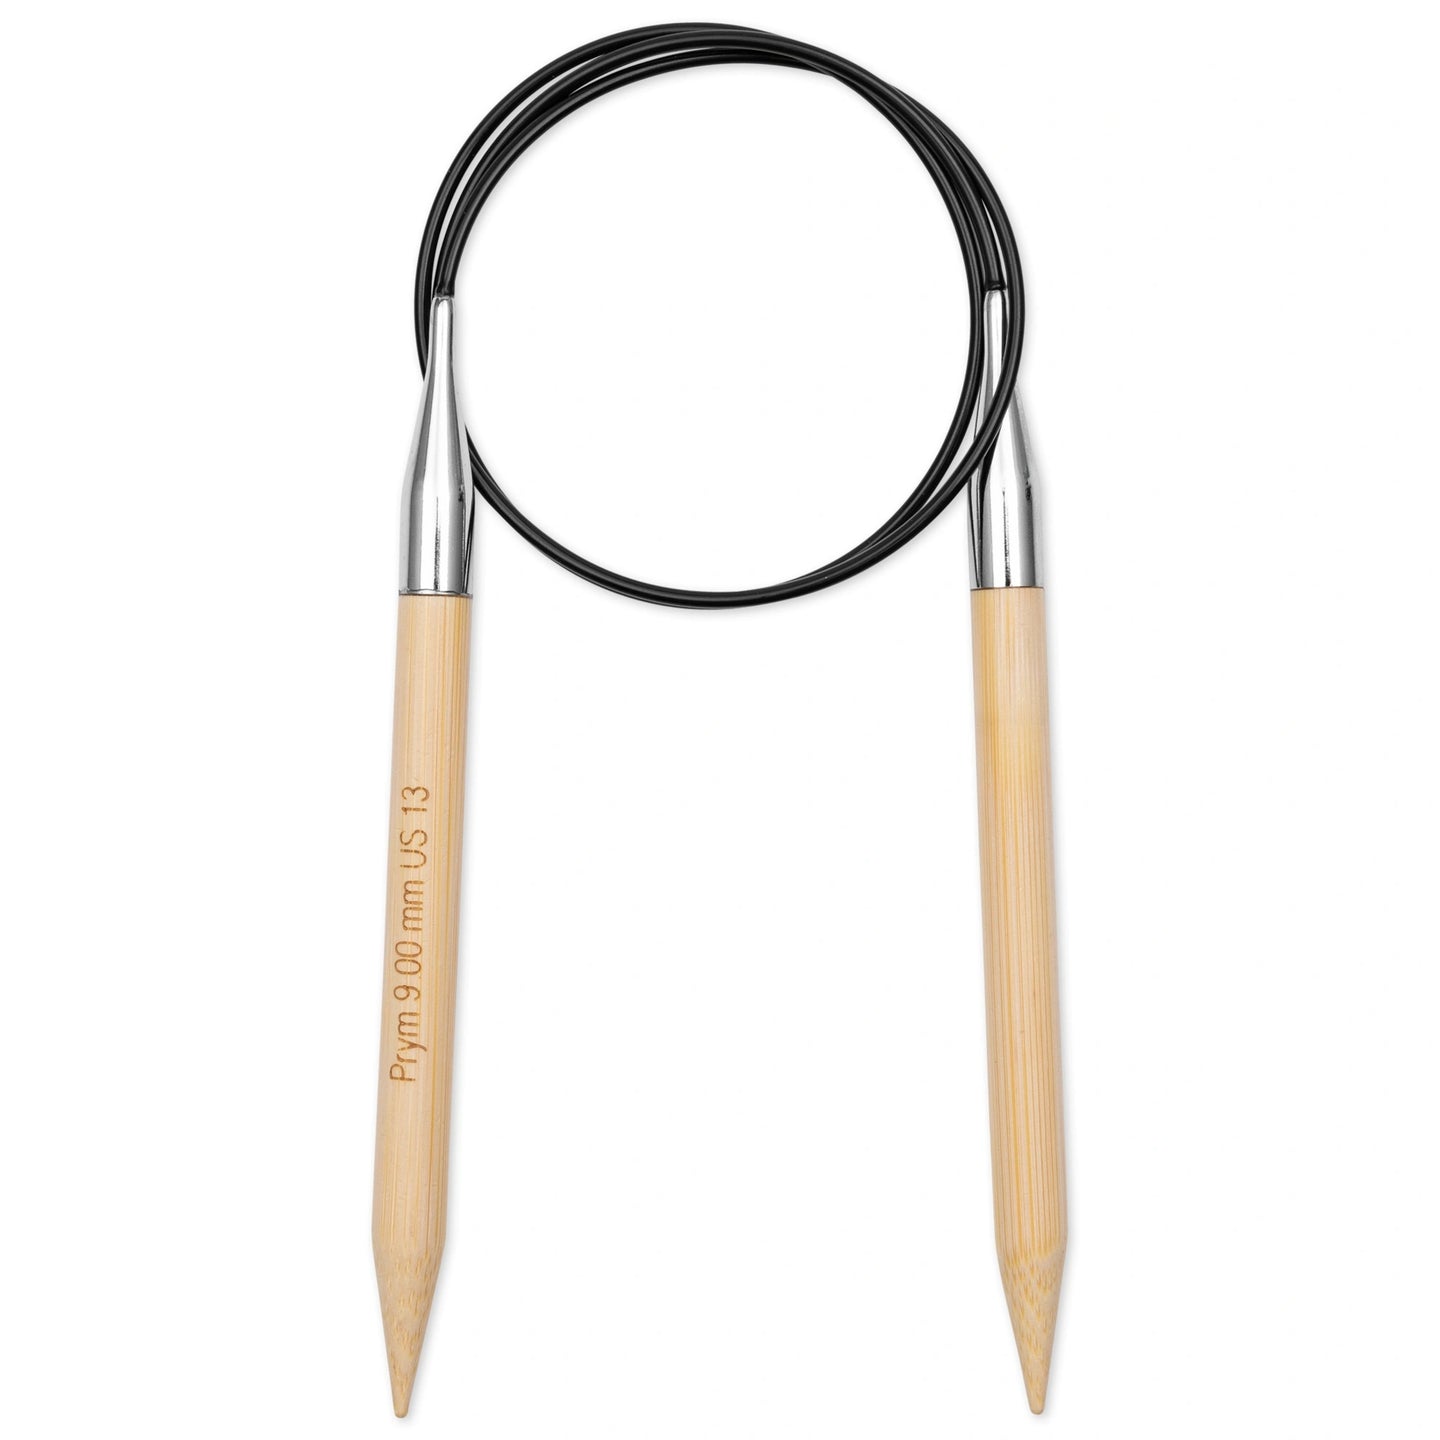 3mm Circular Bamboo Knitting Needles